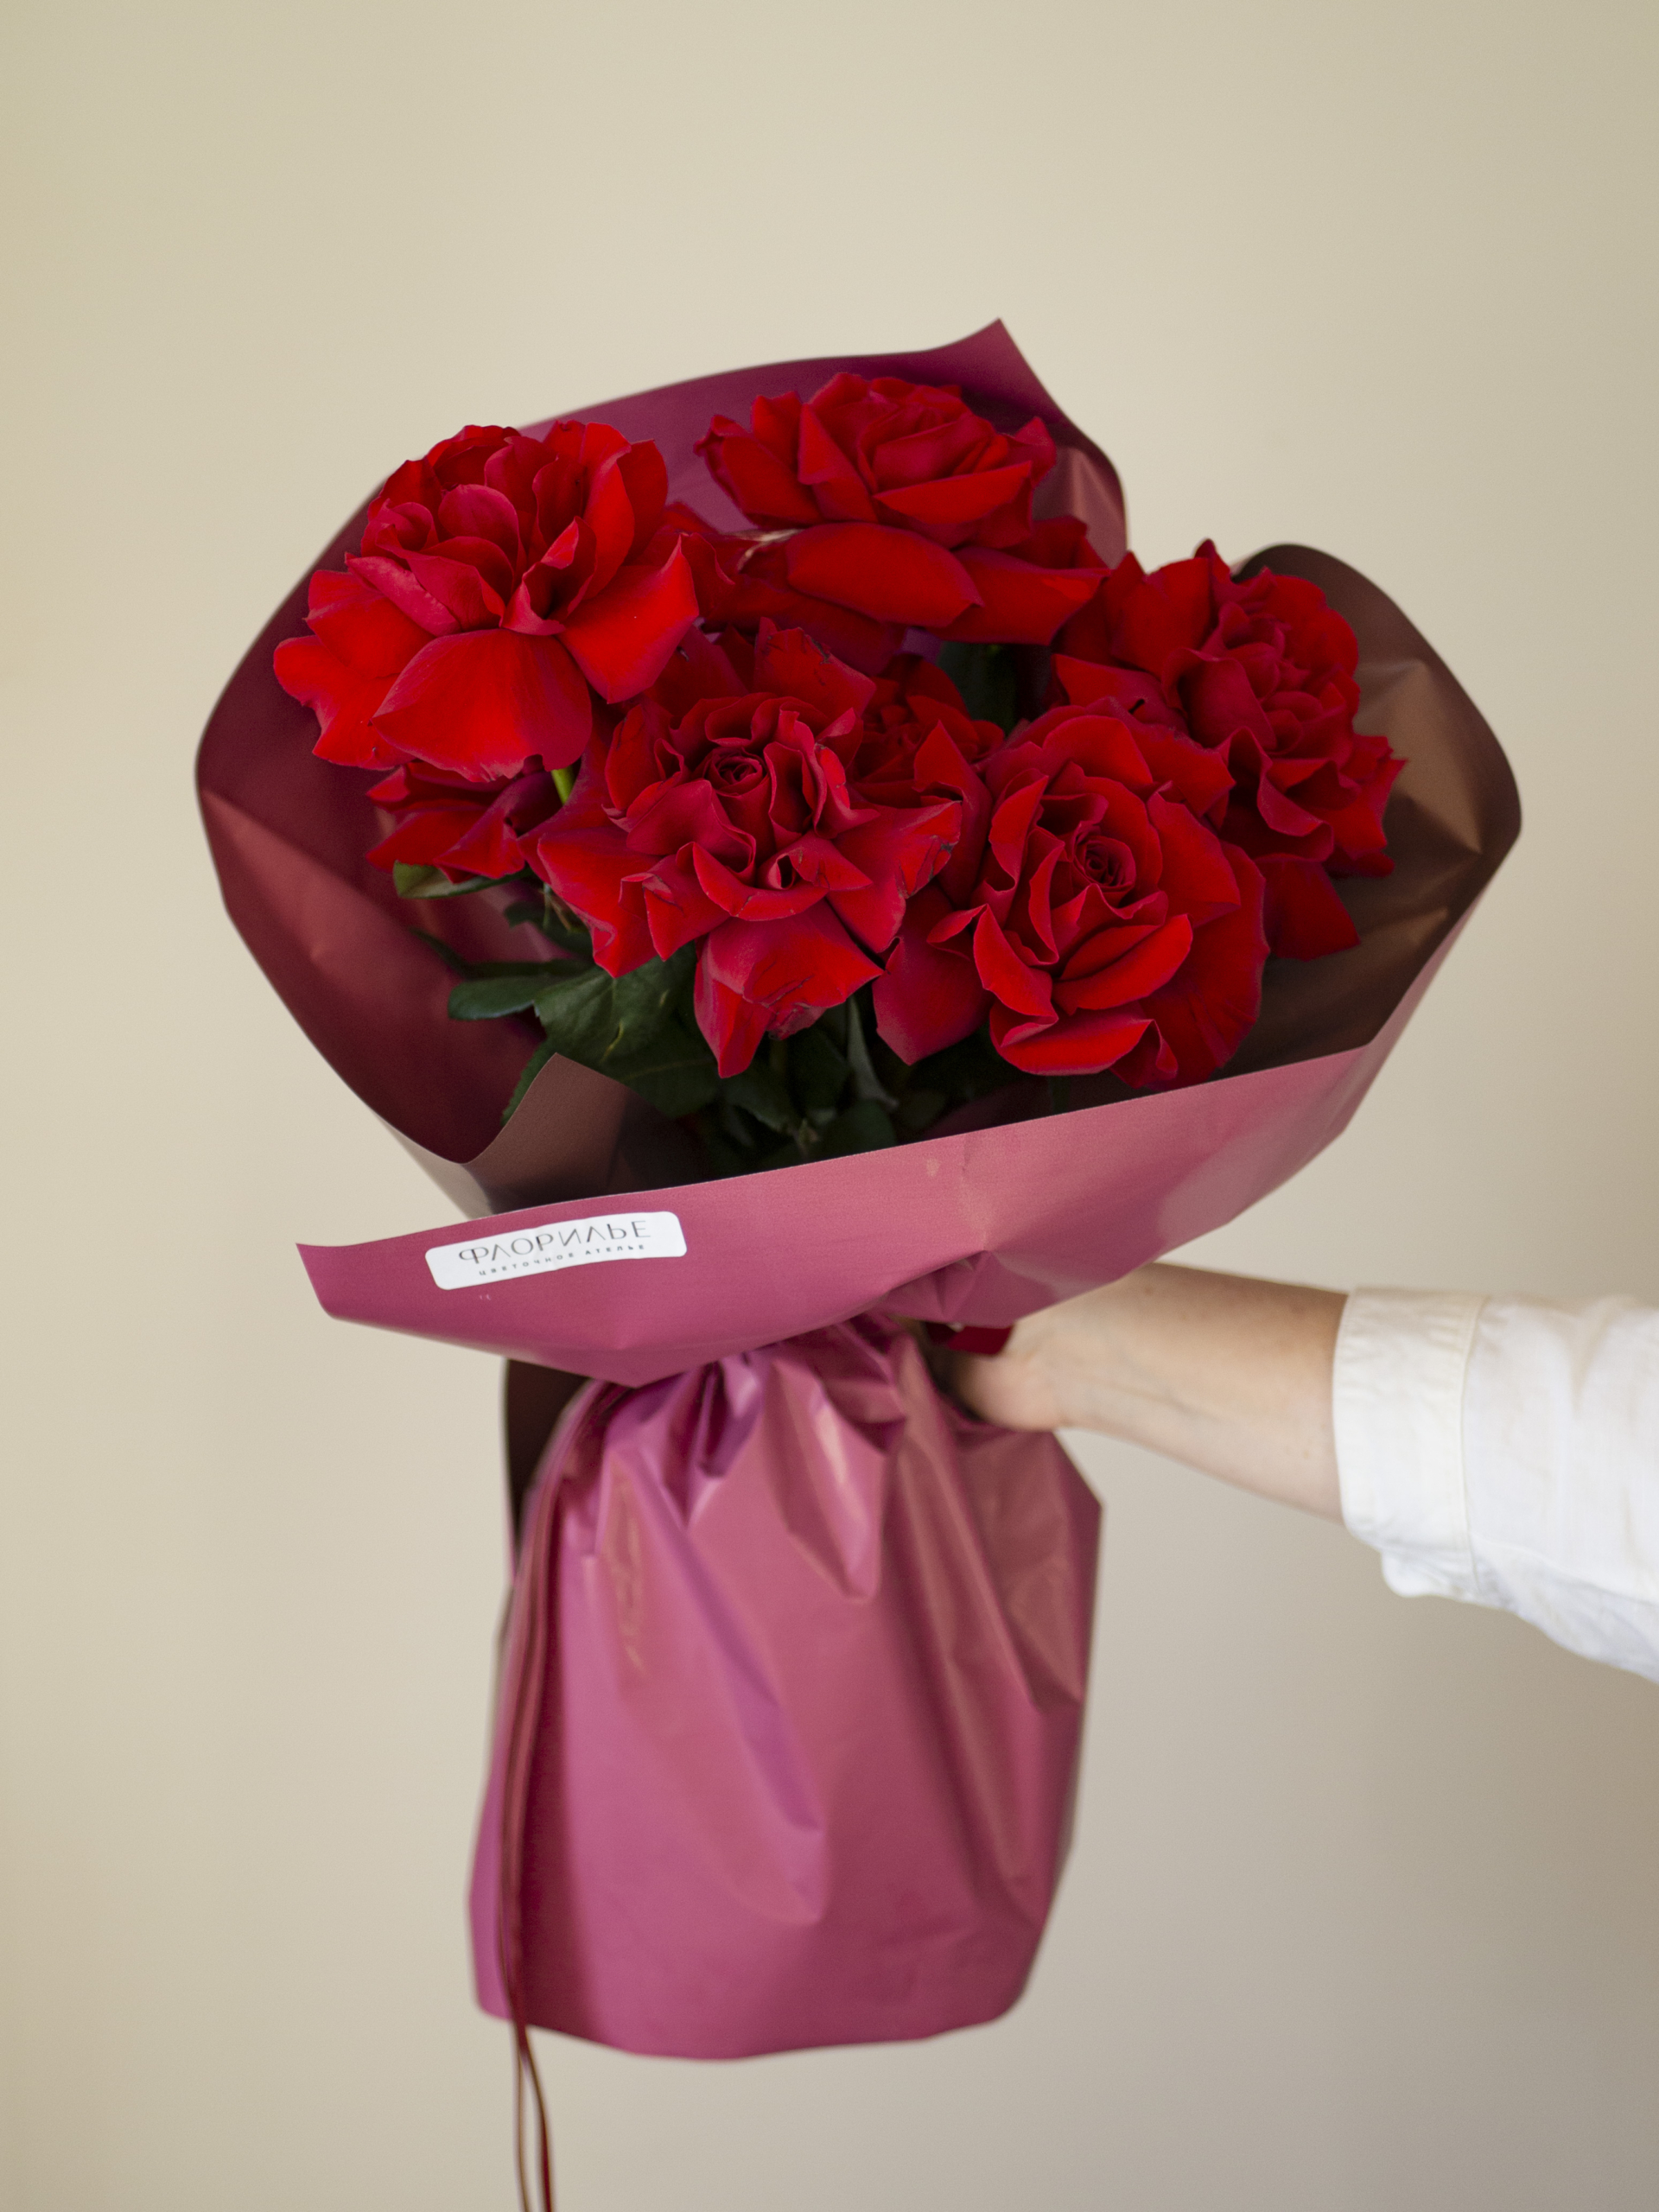 Доставка цветов 10 руб Минск букетов роз ⭐ интернет магазин недорого